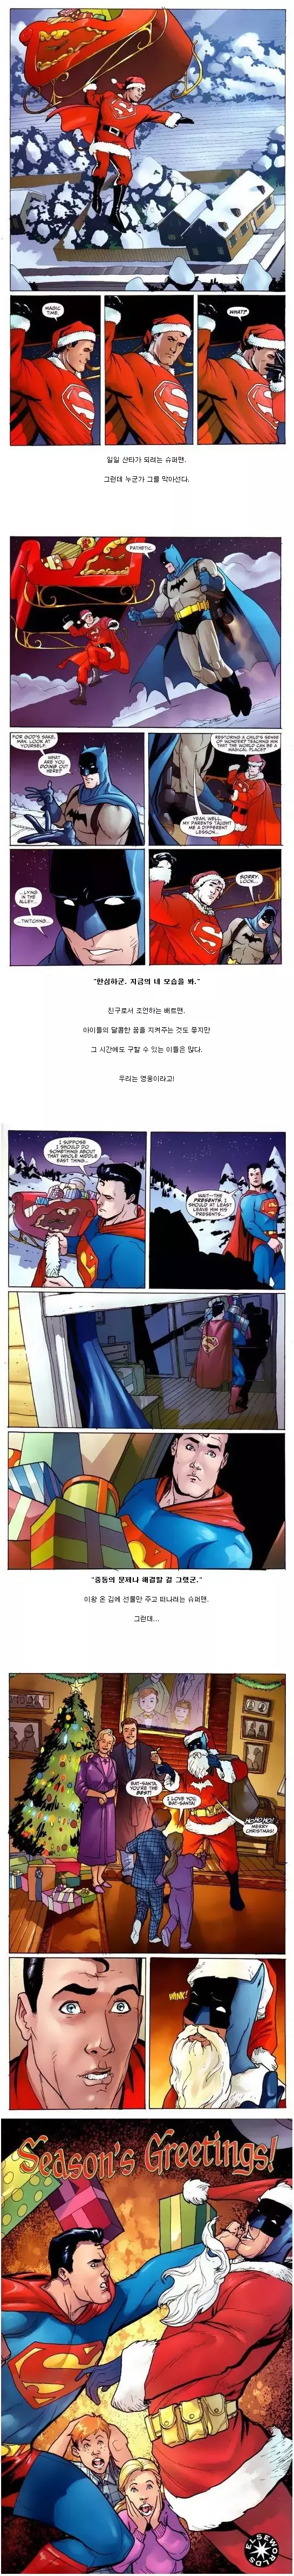 크리스마스의 슈퍼맨과 배트맨 -cboard